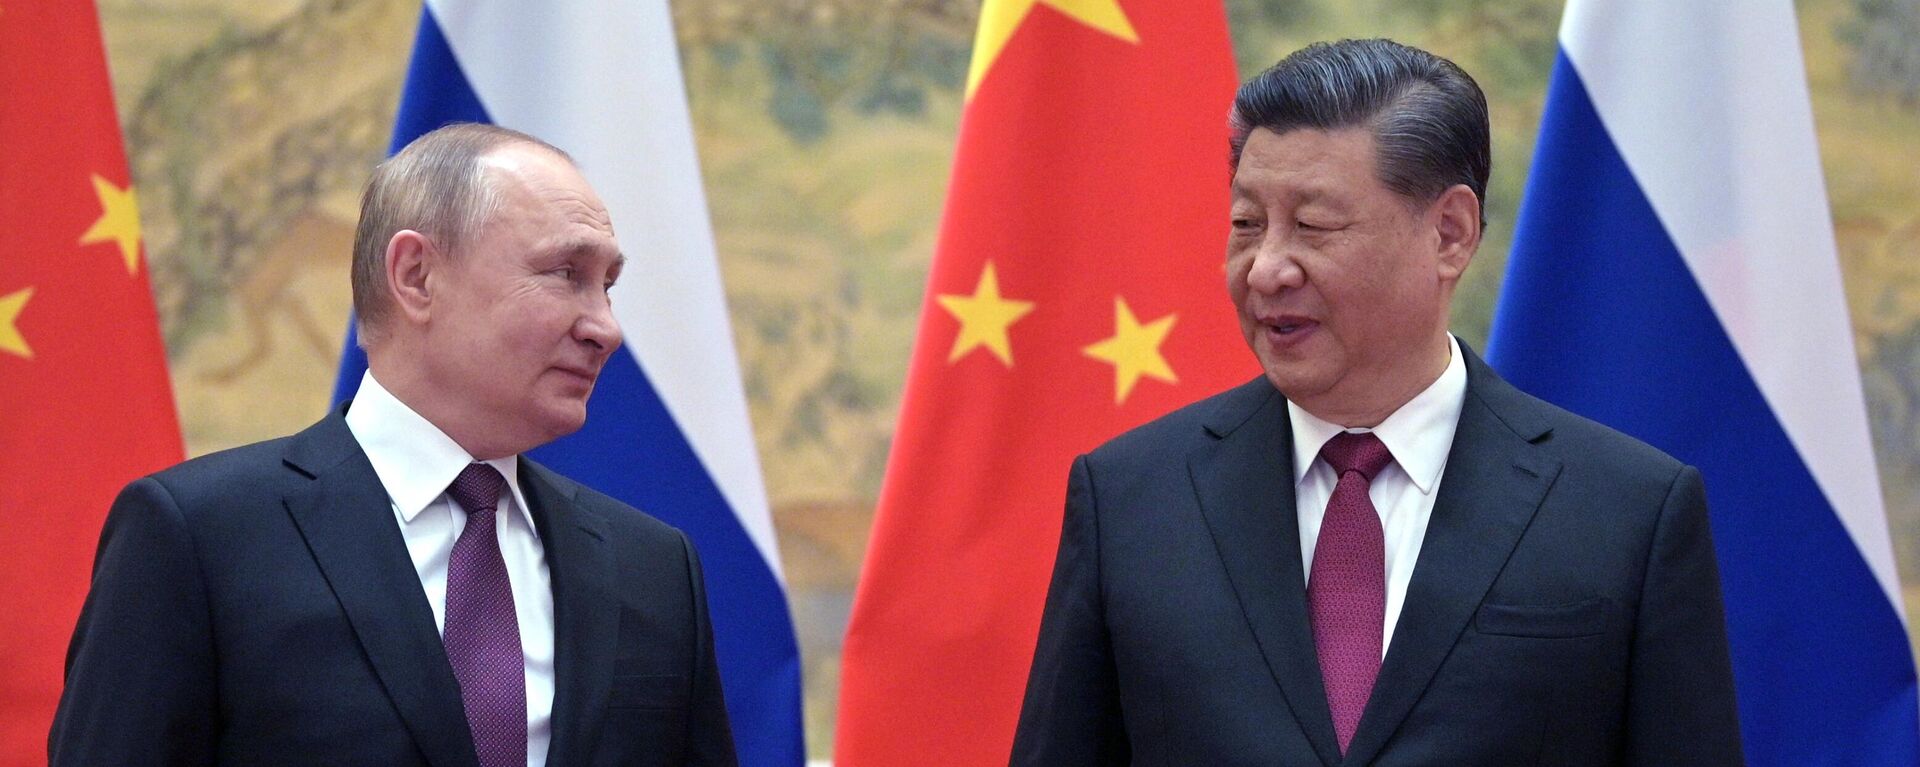 El presidente de Rusia, Vladímir Putin, al reunirse en Pekín con el presidente chino, Xi Jinping - Sputnik Mundo, 1920, 25.02.2022